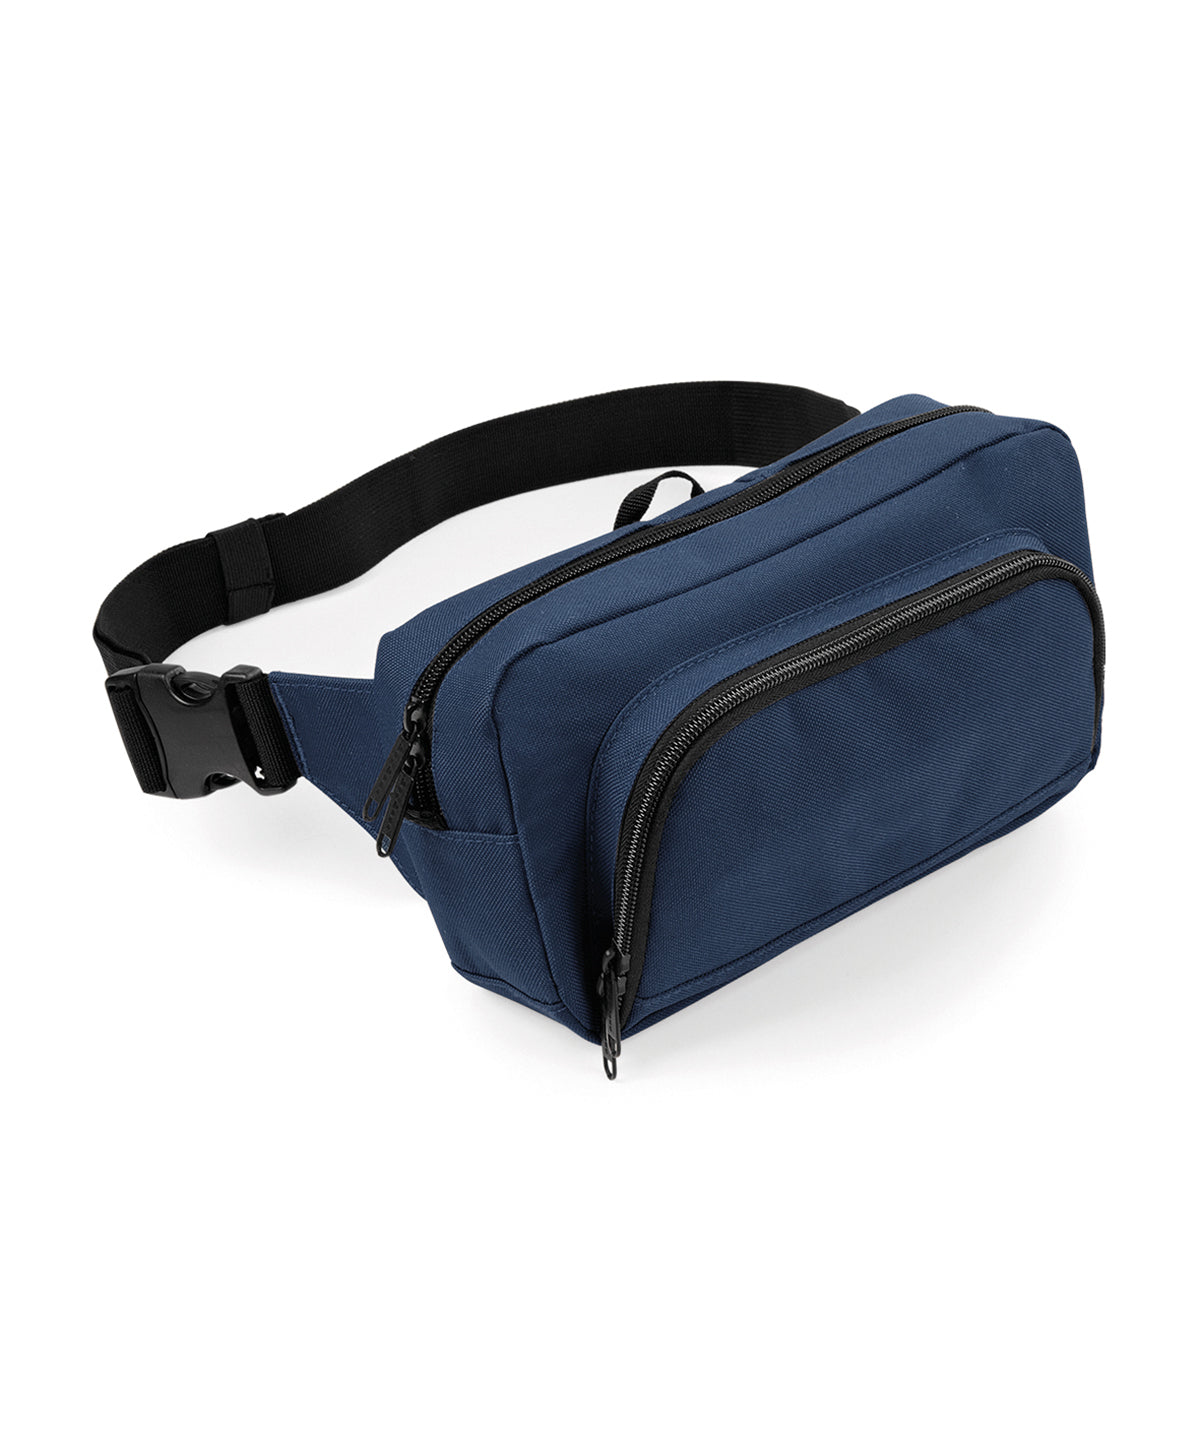 Personalised Bags - Navy Bagbase Organiser waistpack